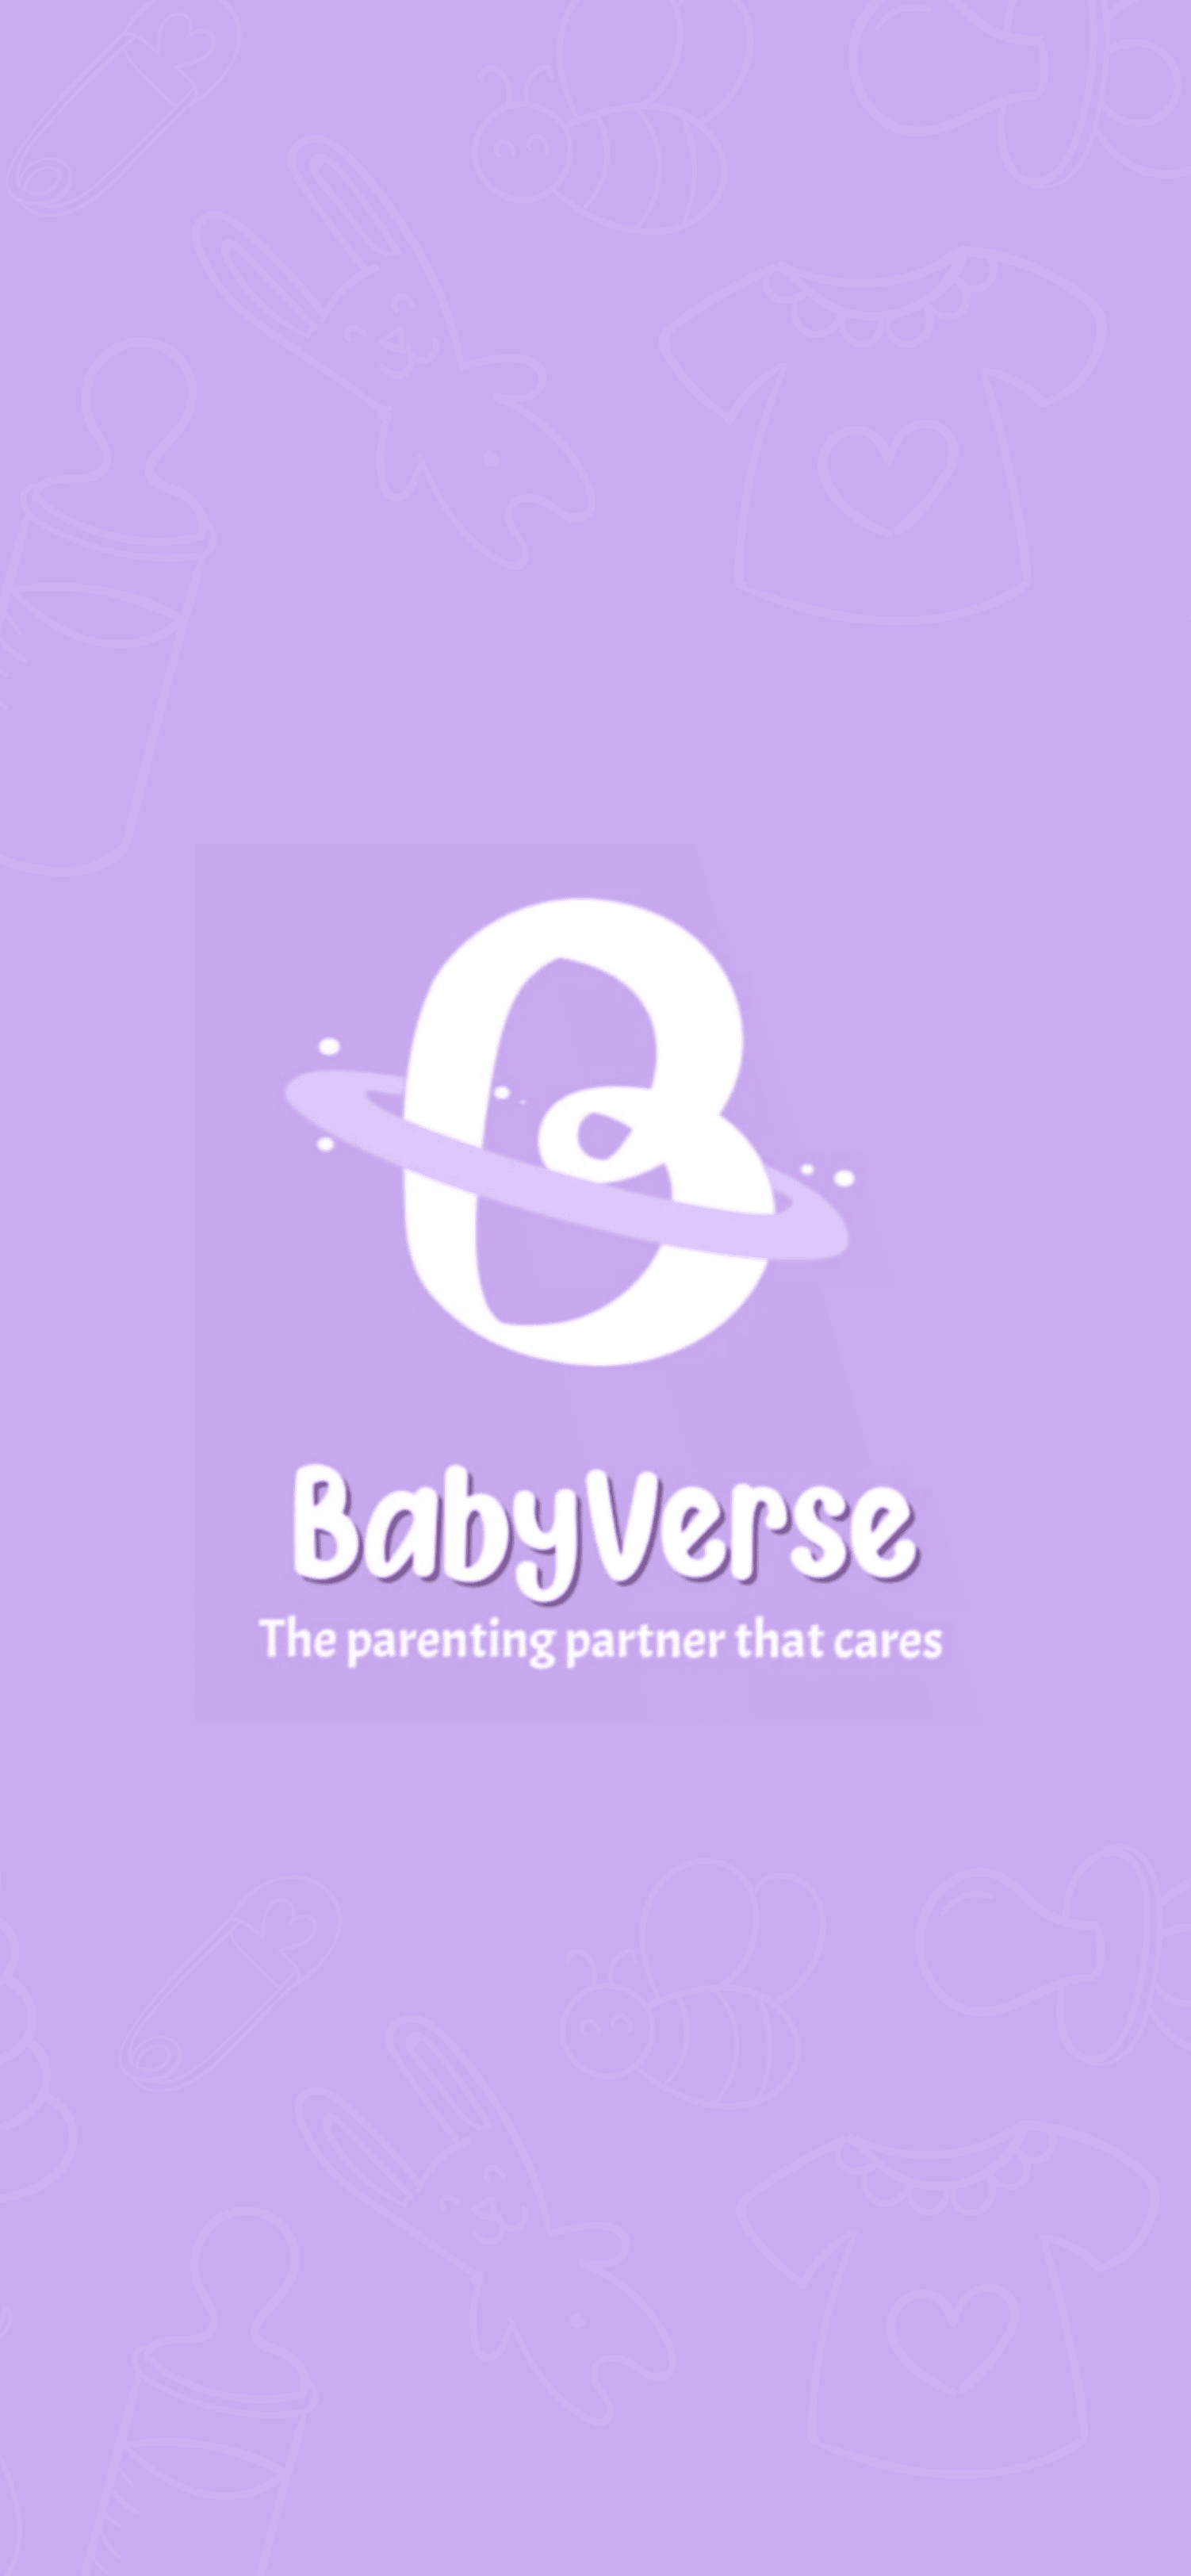 Babyverse